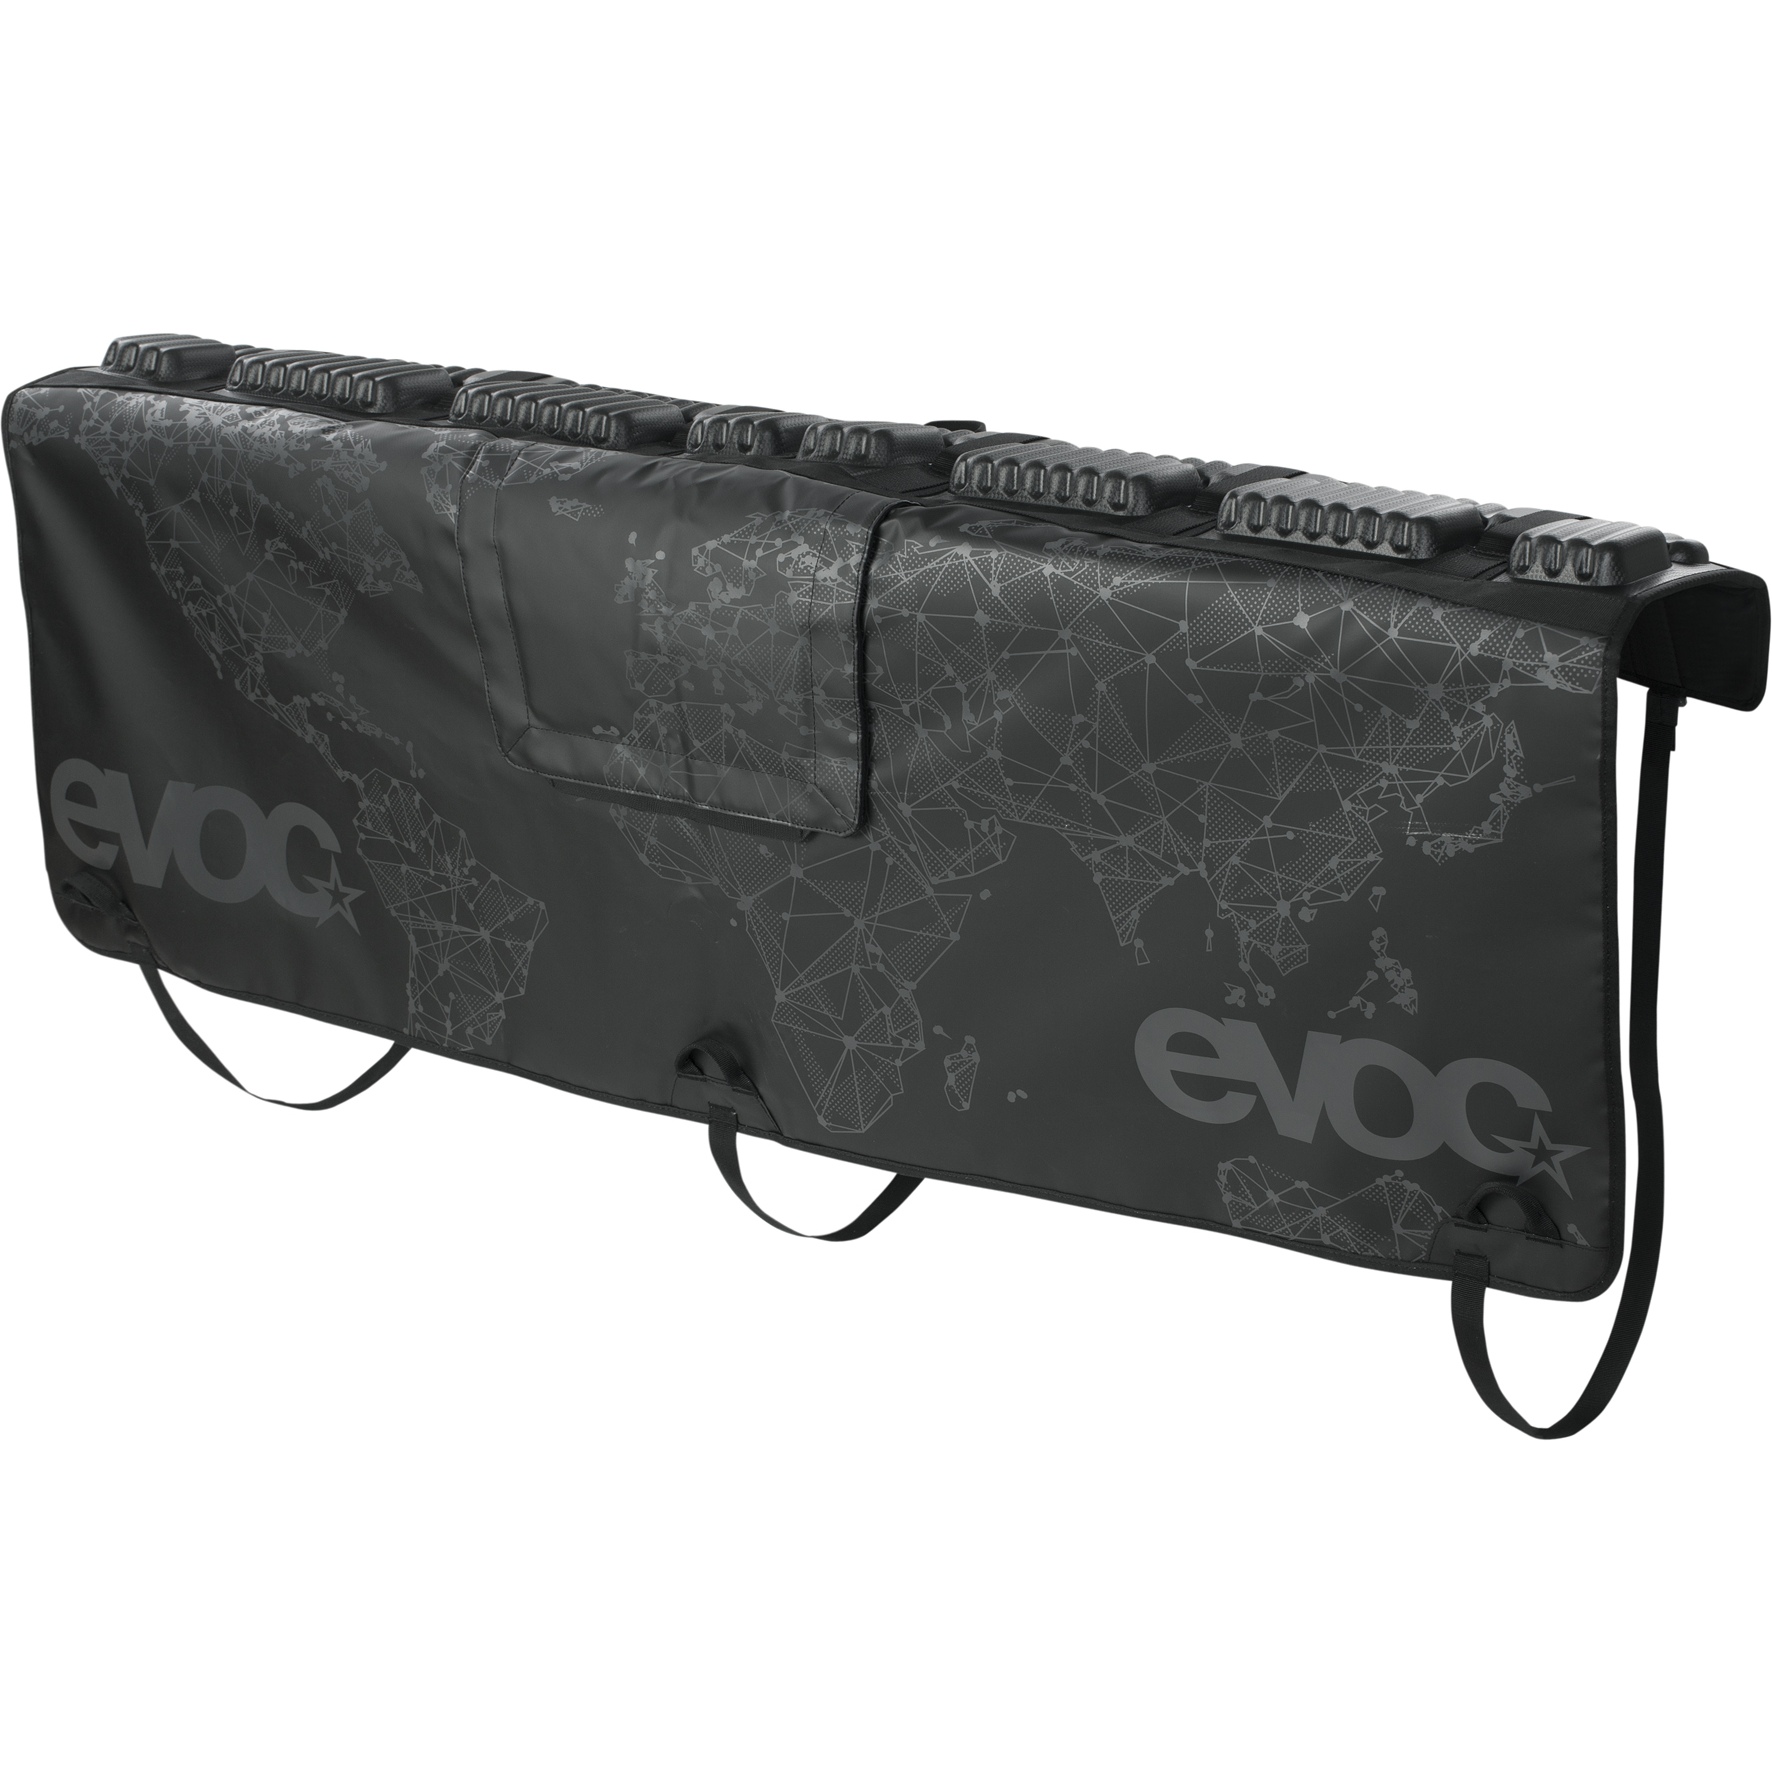 Produktbild von EVOC Tailgate Pad Curve - Heckklappen-Schutz - Größe M/L - Schwarz